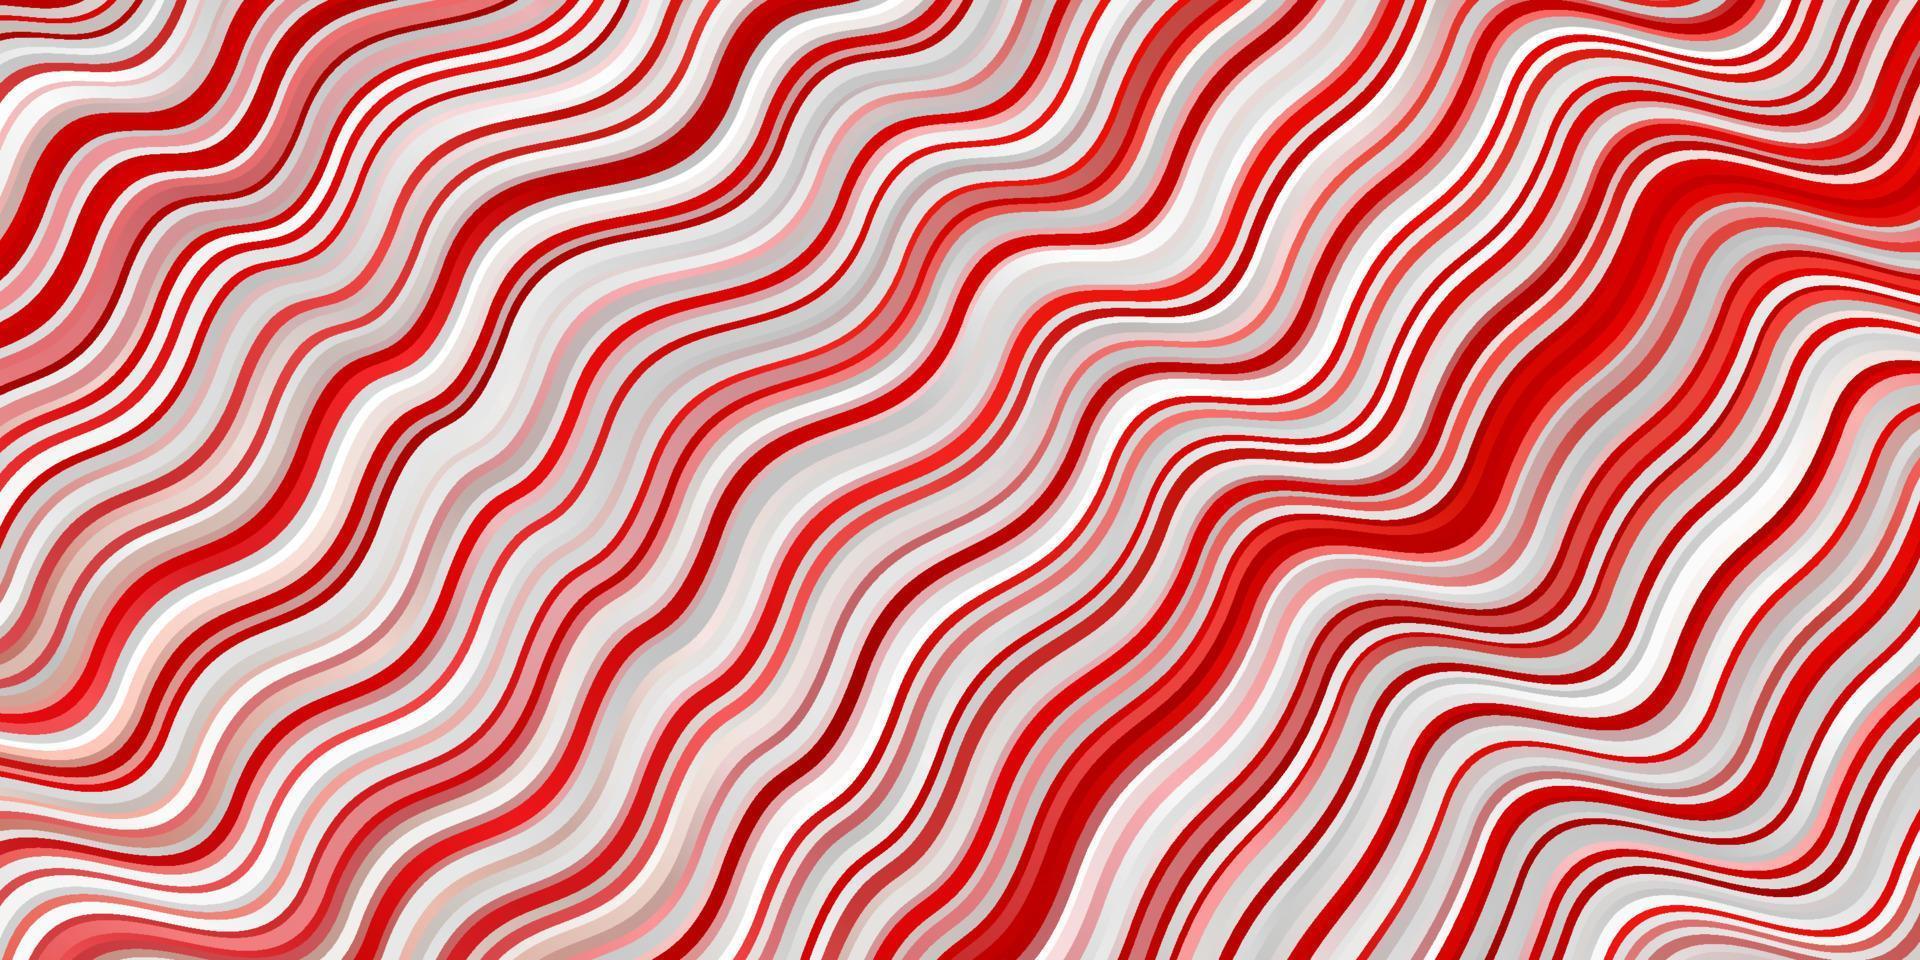 patrón de vector rojo claro con curvas.